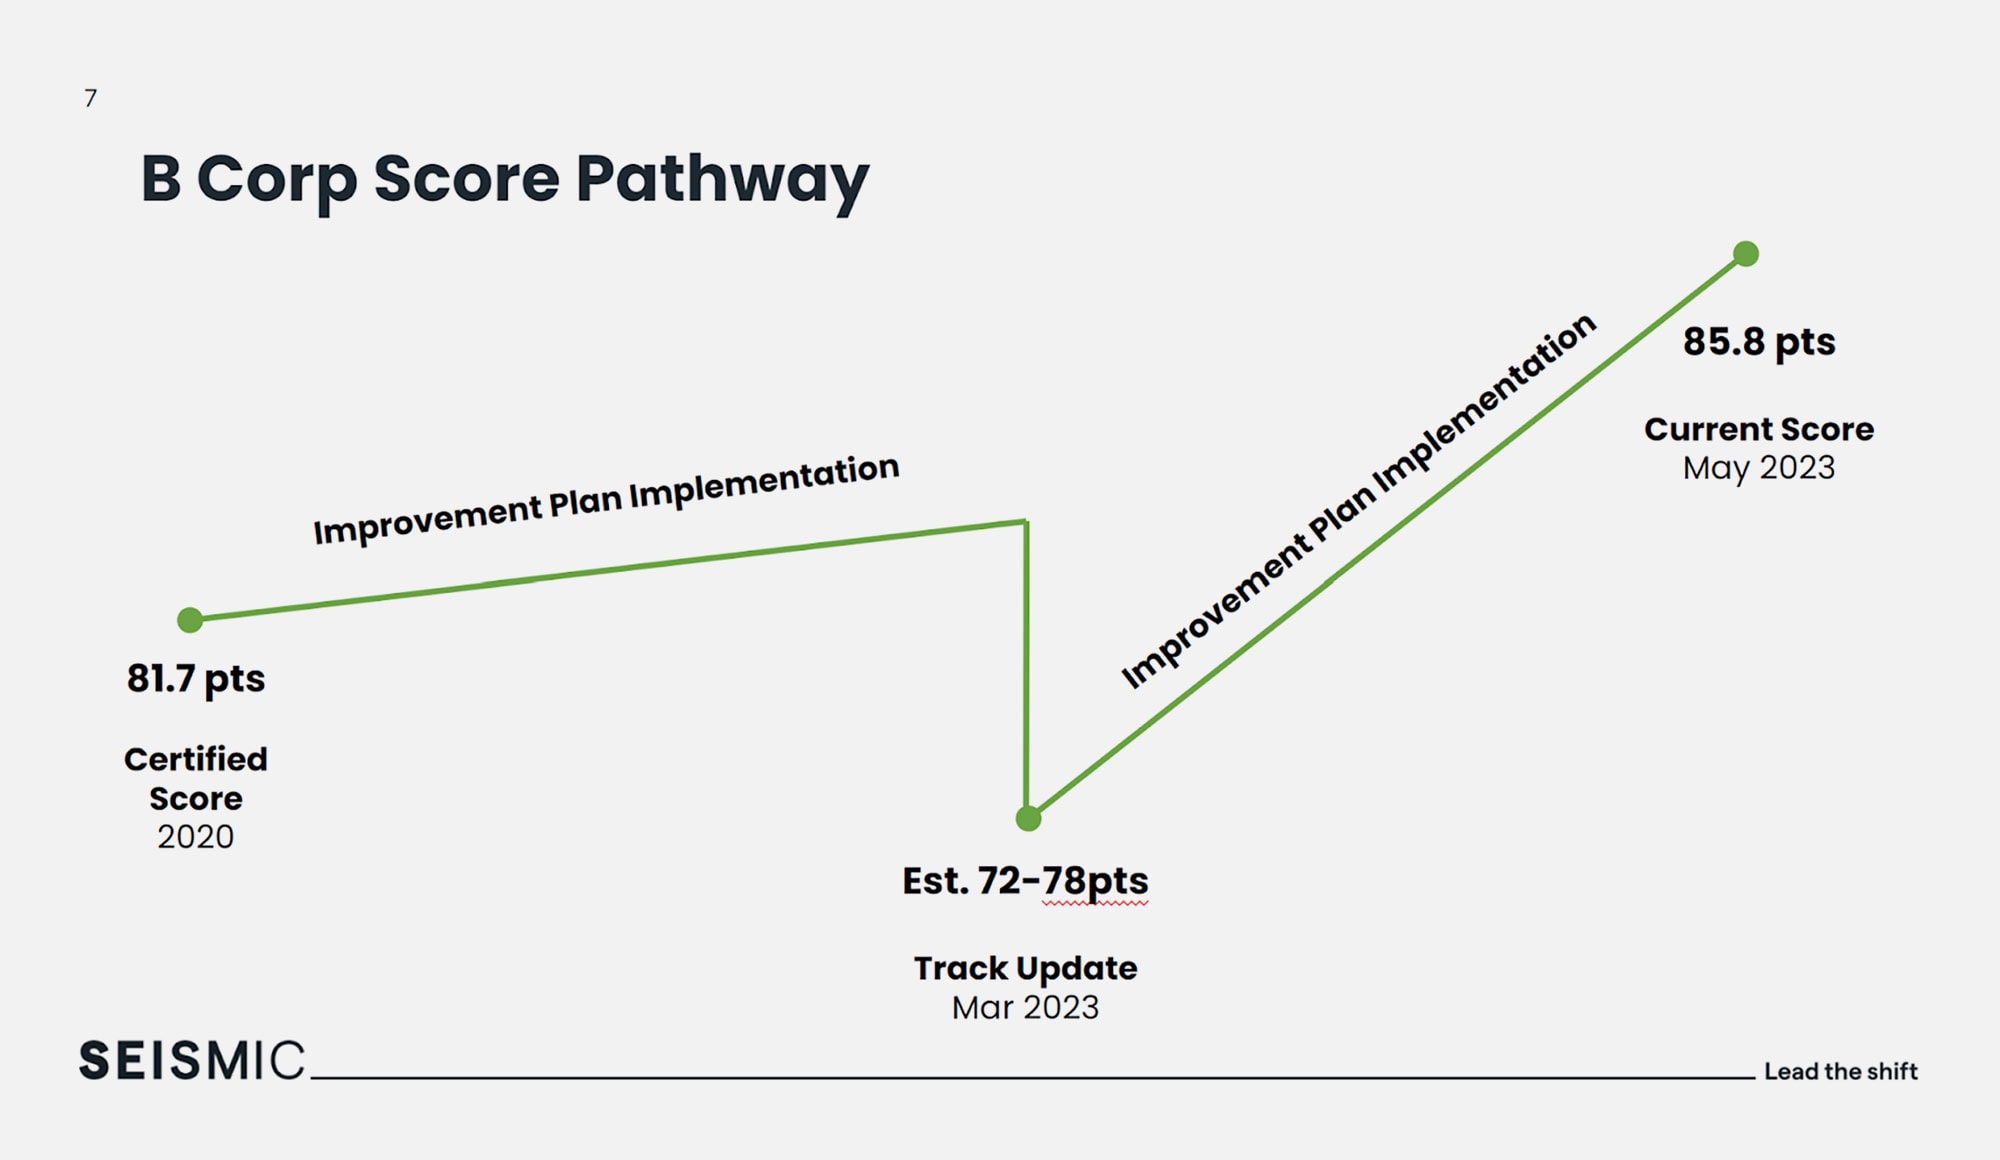 B Corp Score Pathway